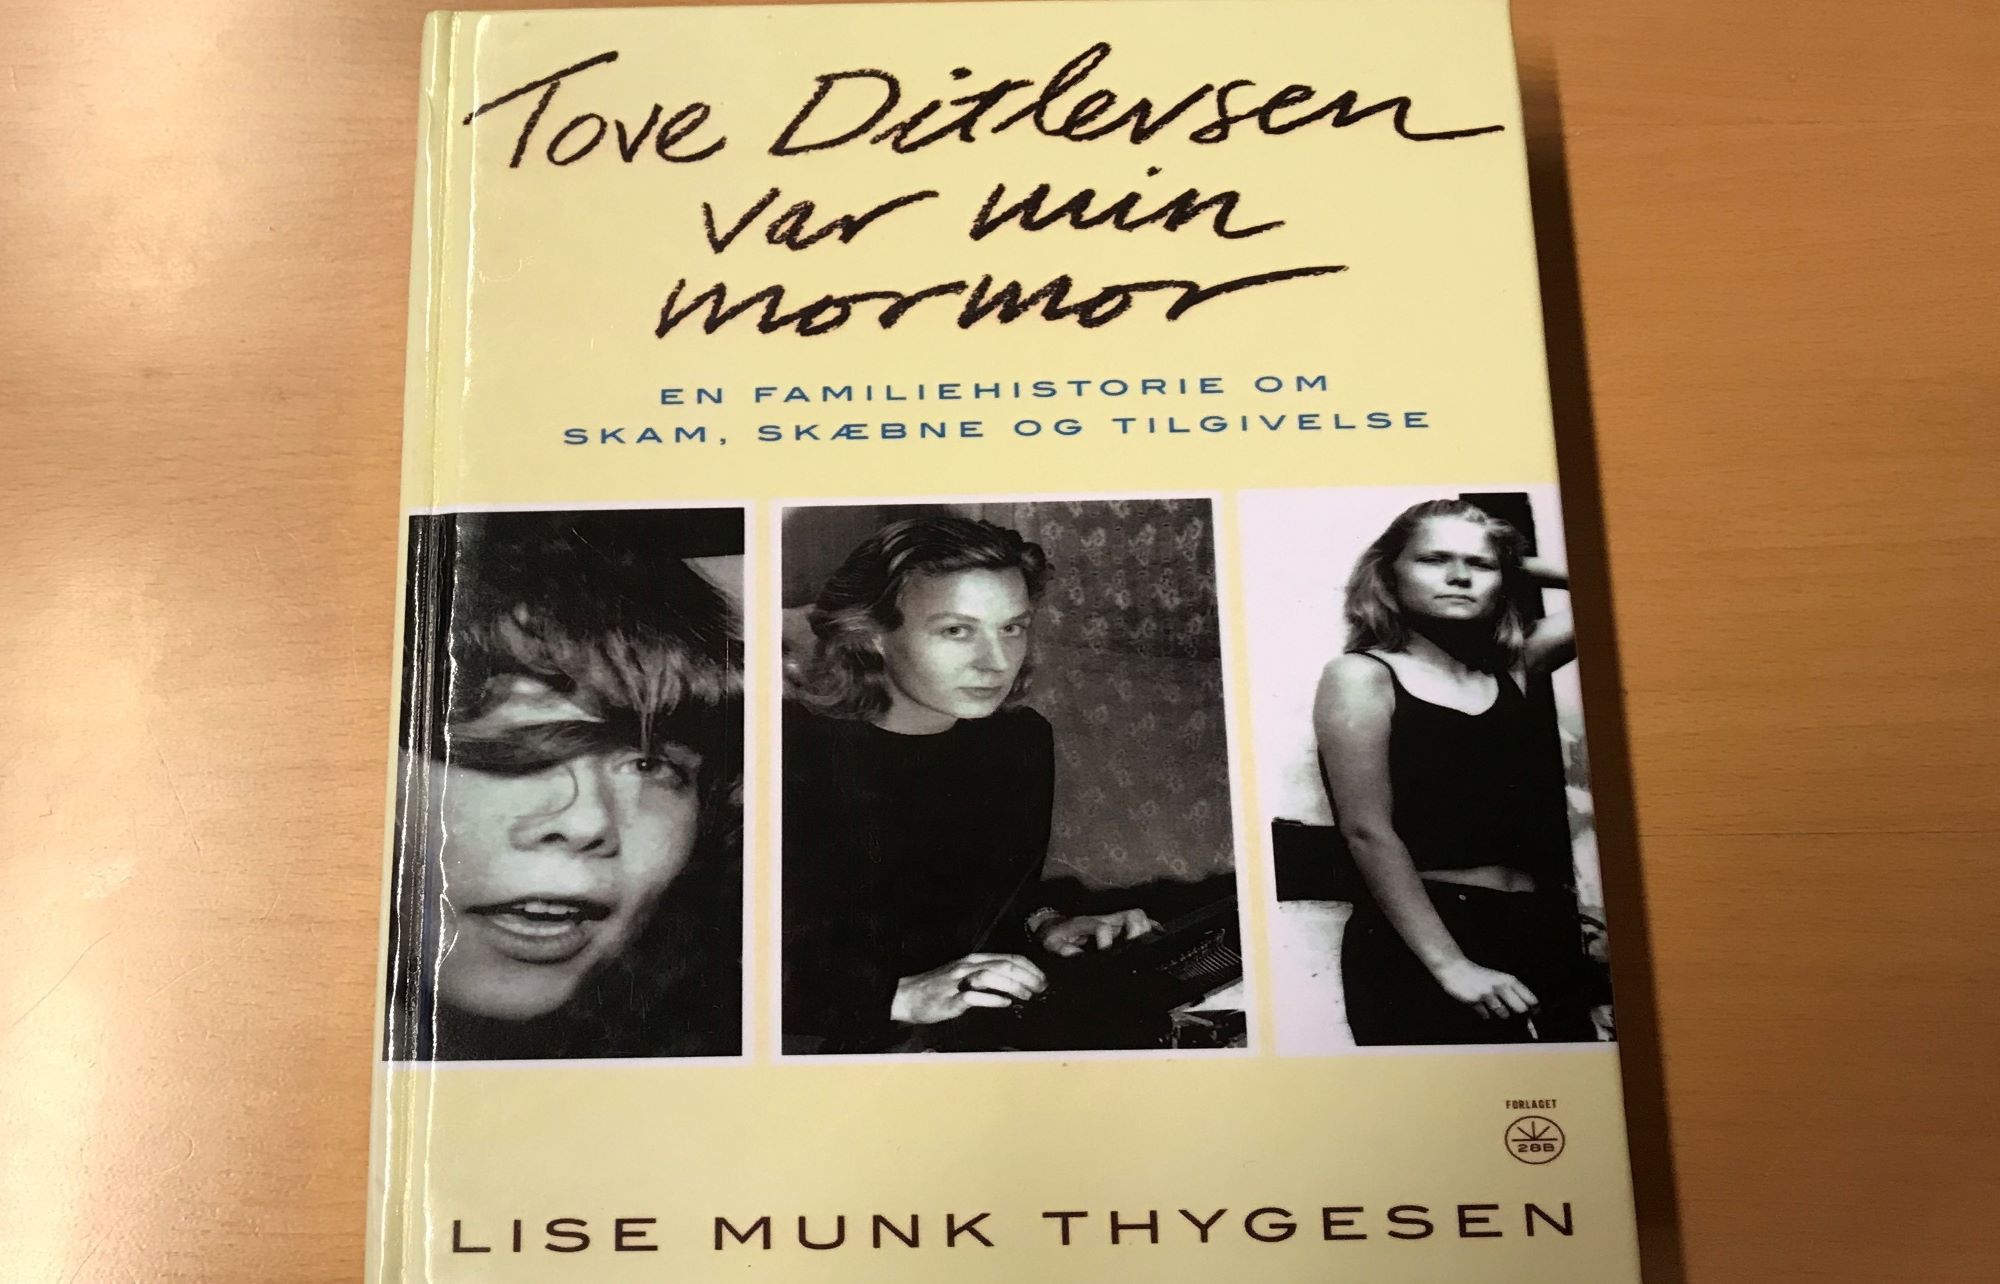 Tove Ditlevsen var min mormor, foredrag med Lise Munk Thygesen, FOF Randers, Mariagerfjord